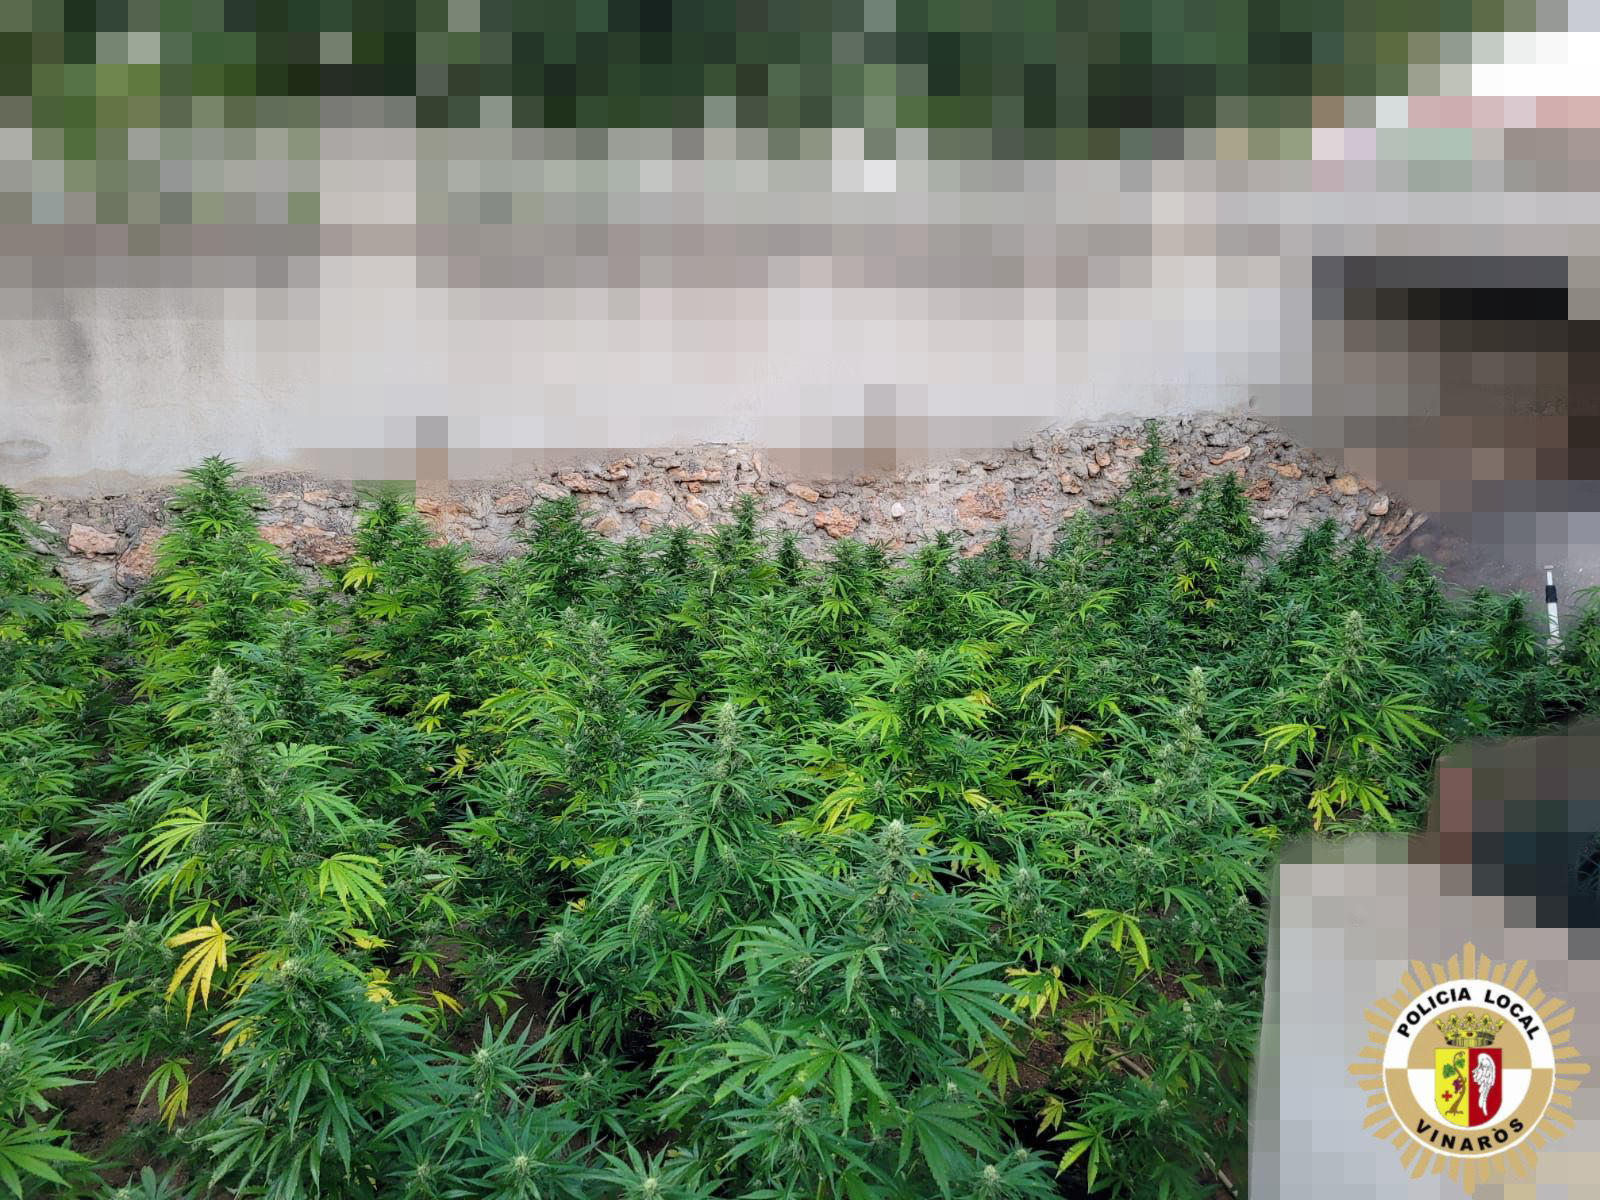 Se contabilizaron 105 plantas de marihuana en la finca de Vinars.